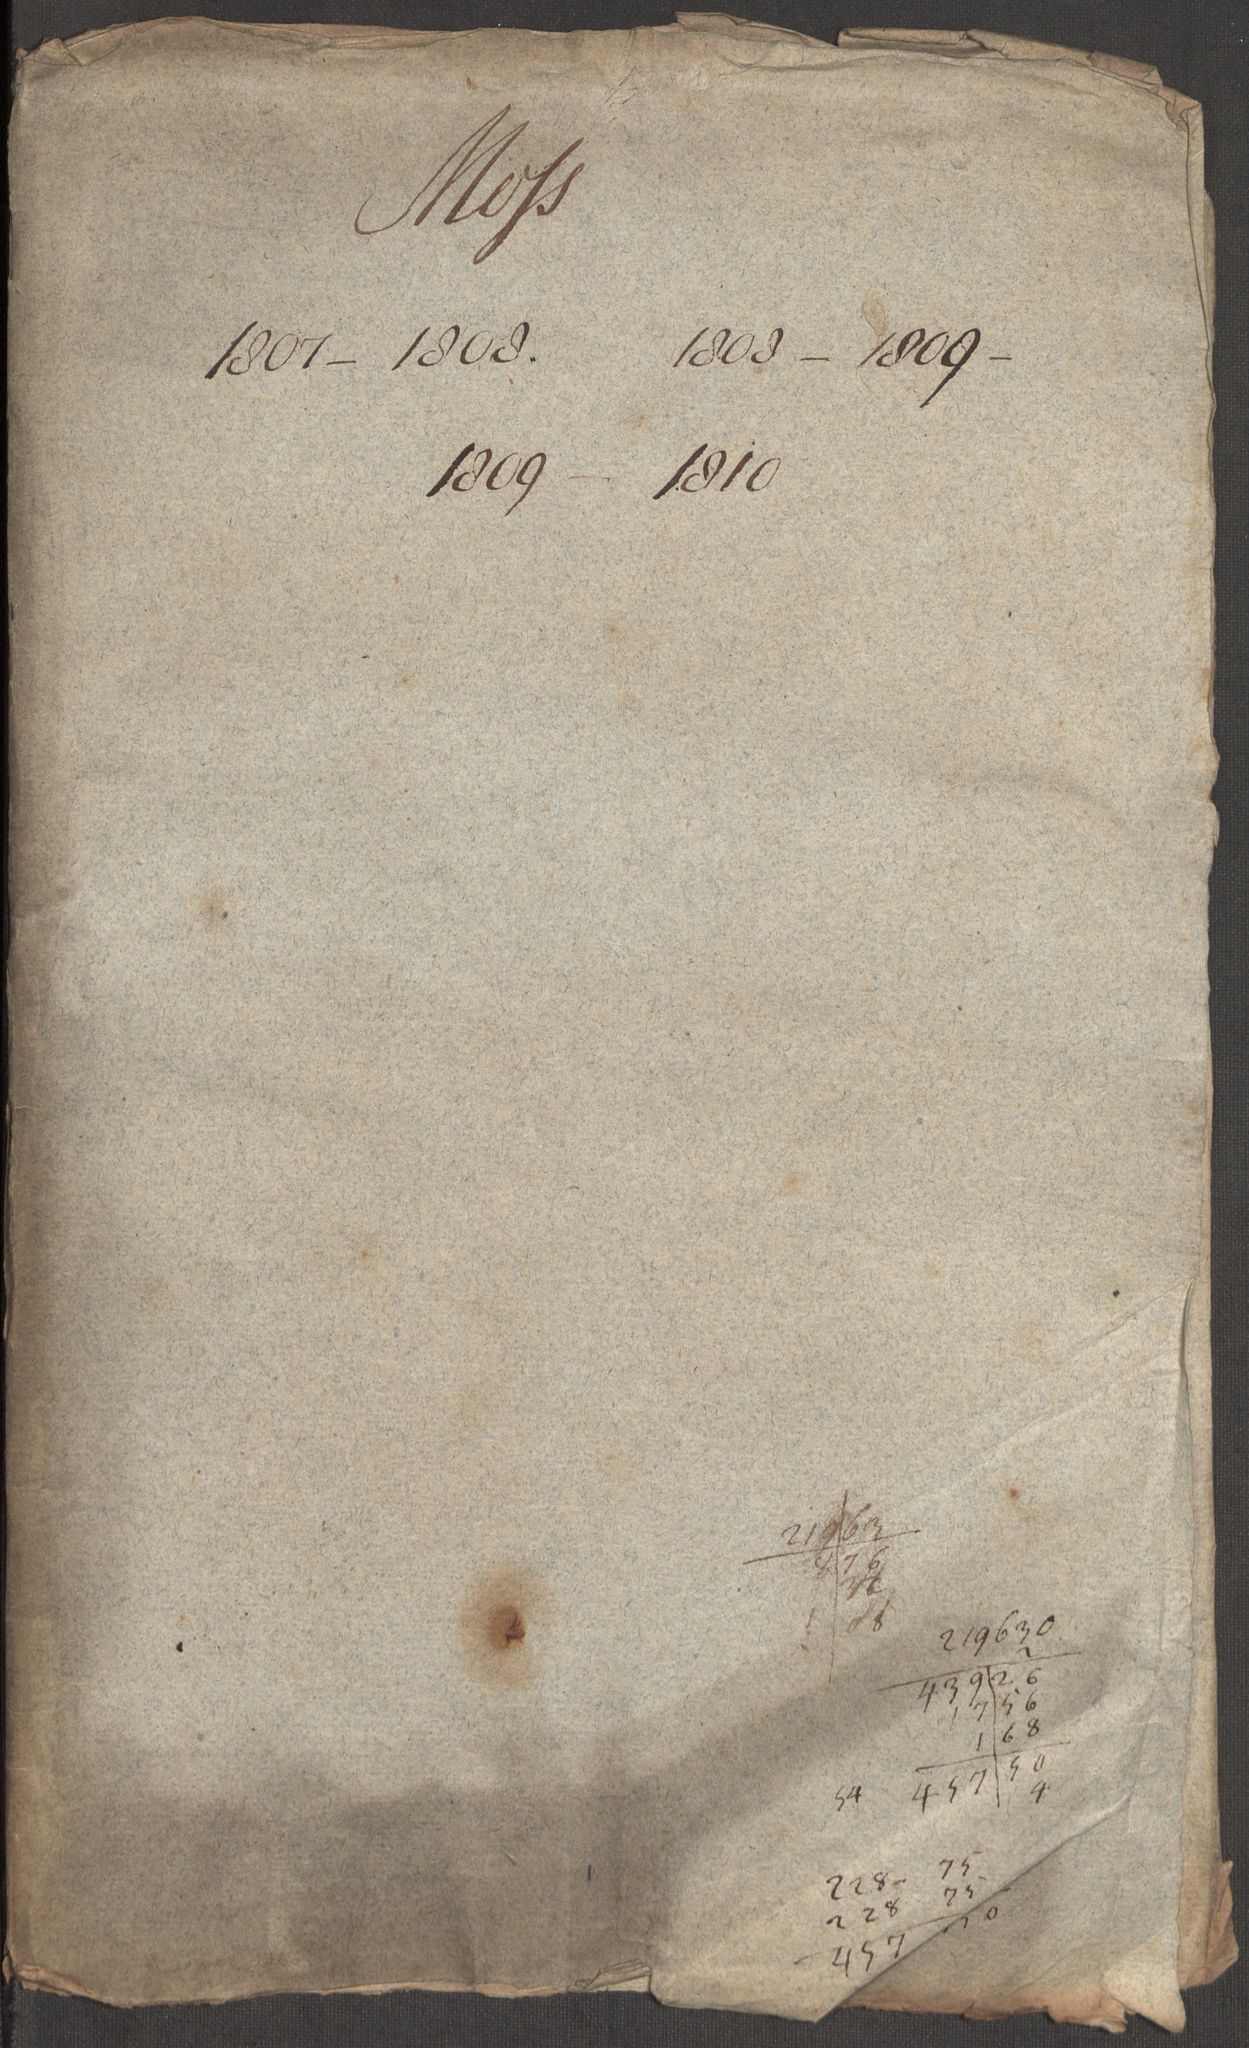 Kommersekollegiet, Brannforsikringskontoret 1767-1814, RA/EA-5458/F/Fa/L0041/0002: Moss / Dokumenter, 1807-1811